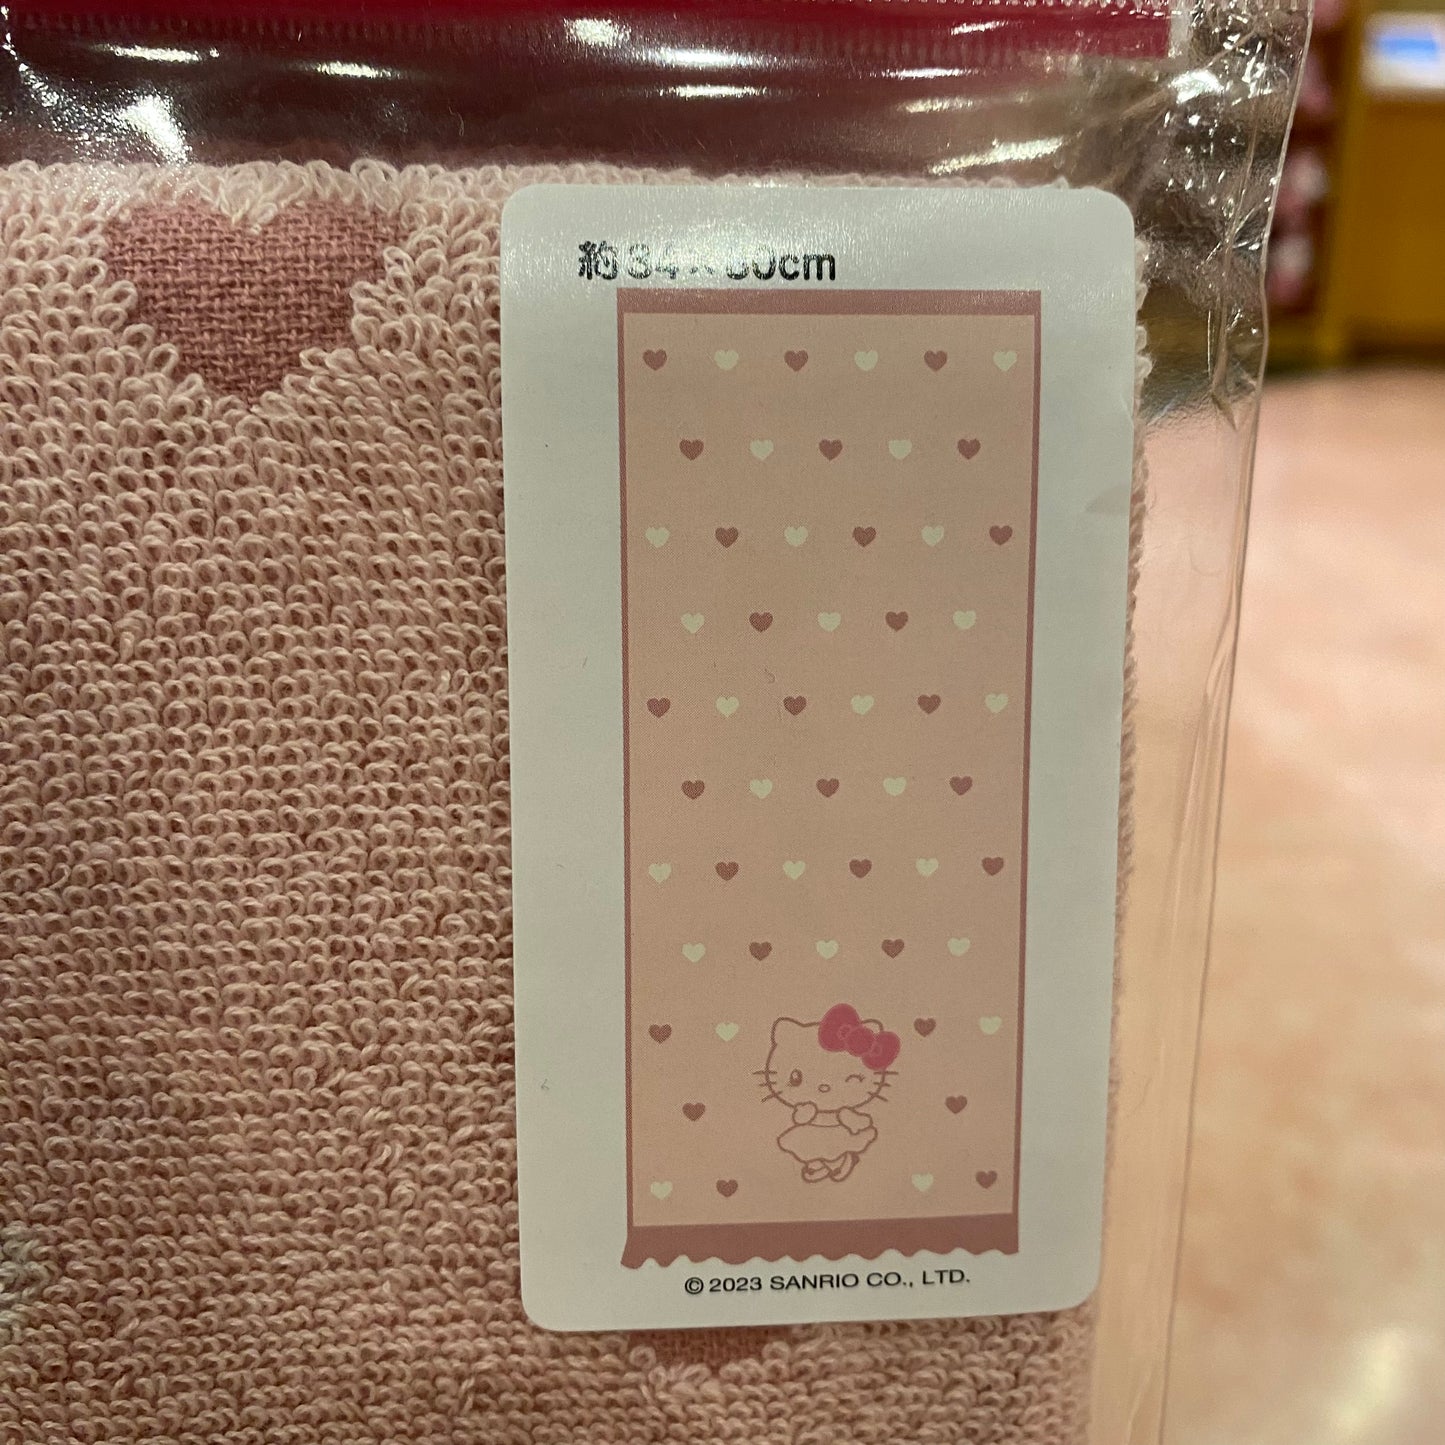 【Order】USJ Hello Kitty Long Towel